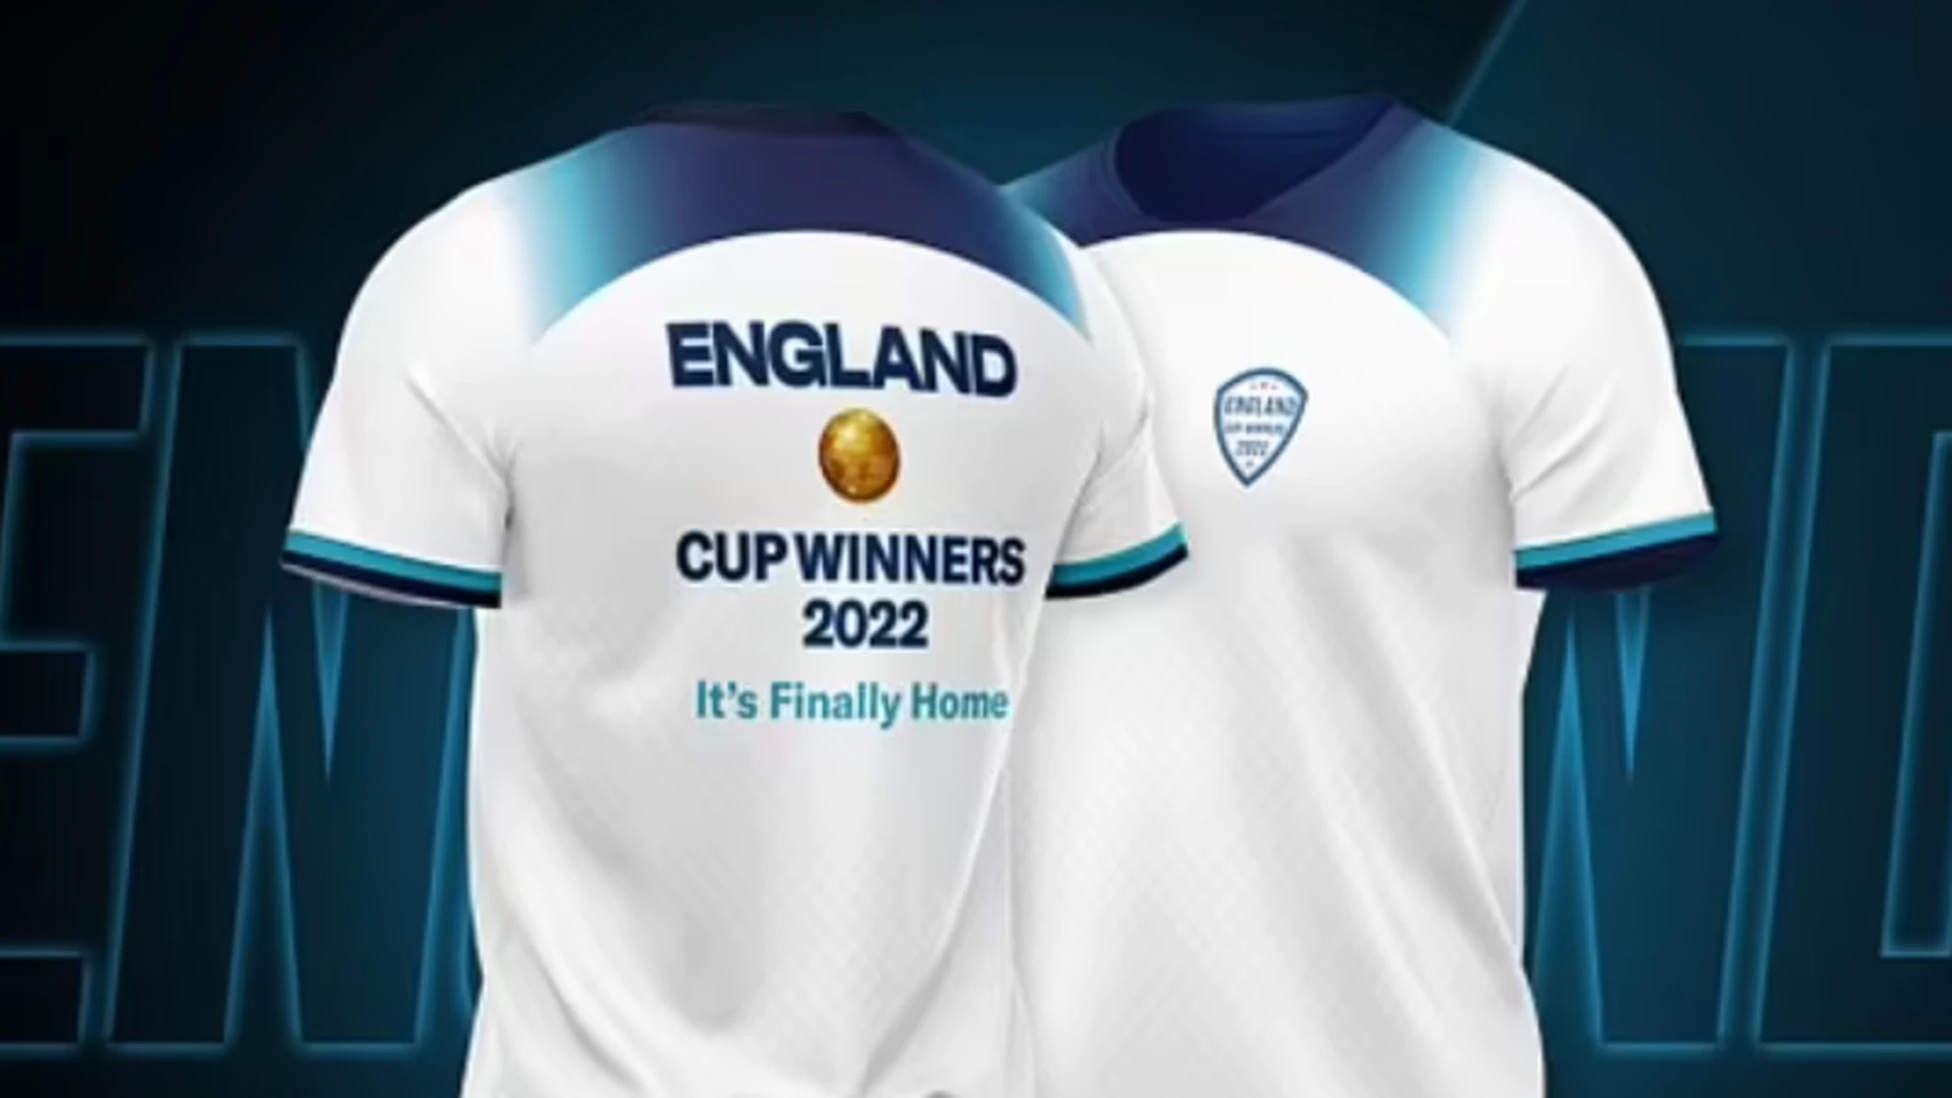 Un empresario inglés compró 18.000 camisetas con la inscripción "Inglaterra campeón"